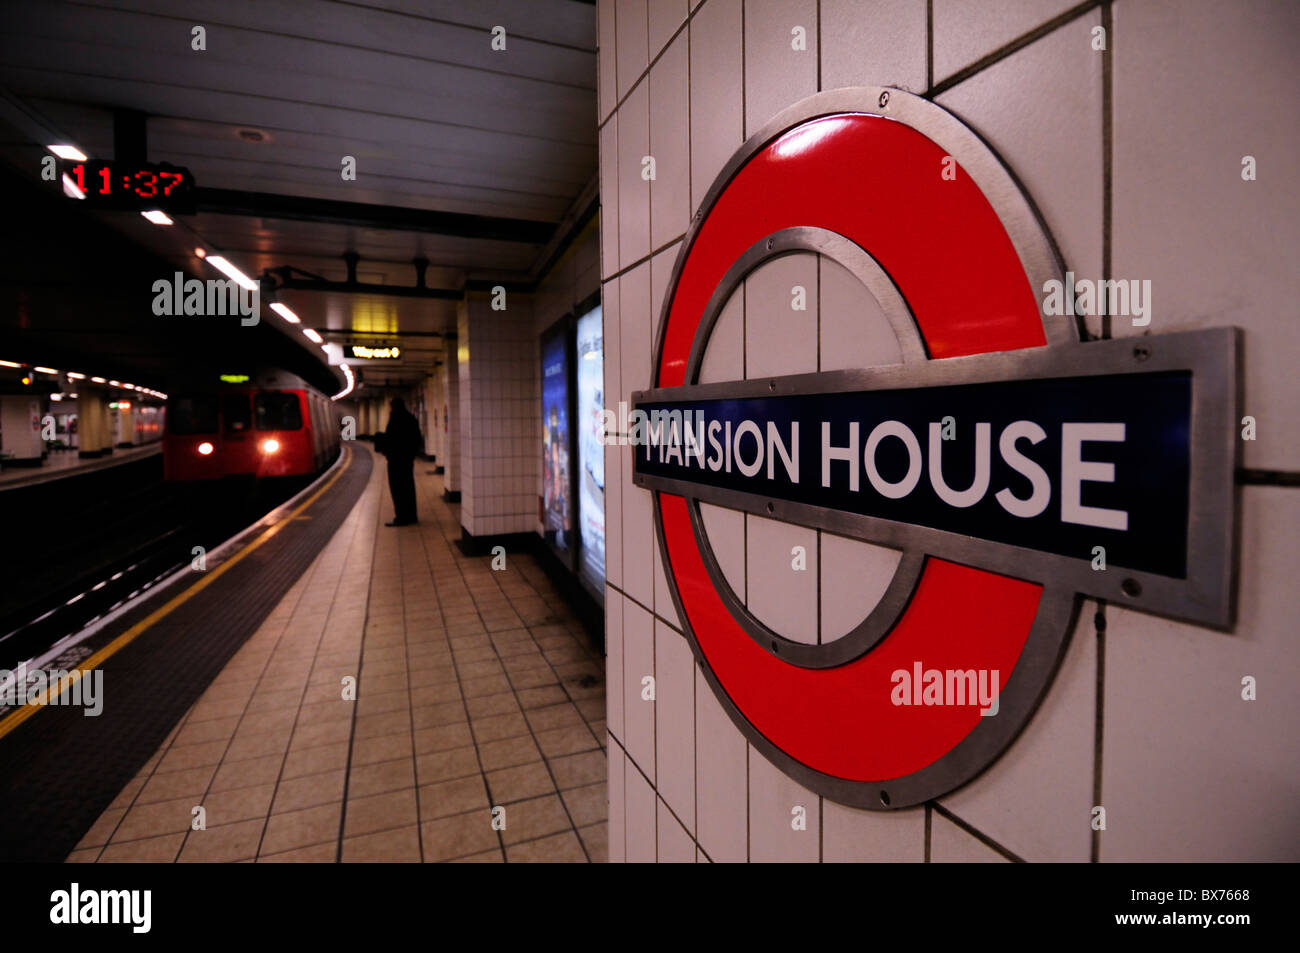 La station de métro Mansion House, Londres, Angleterre, Royaume-Uni Banque D'Images